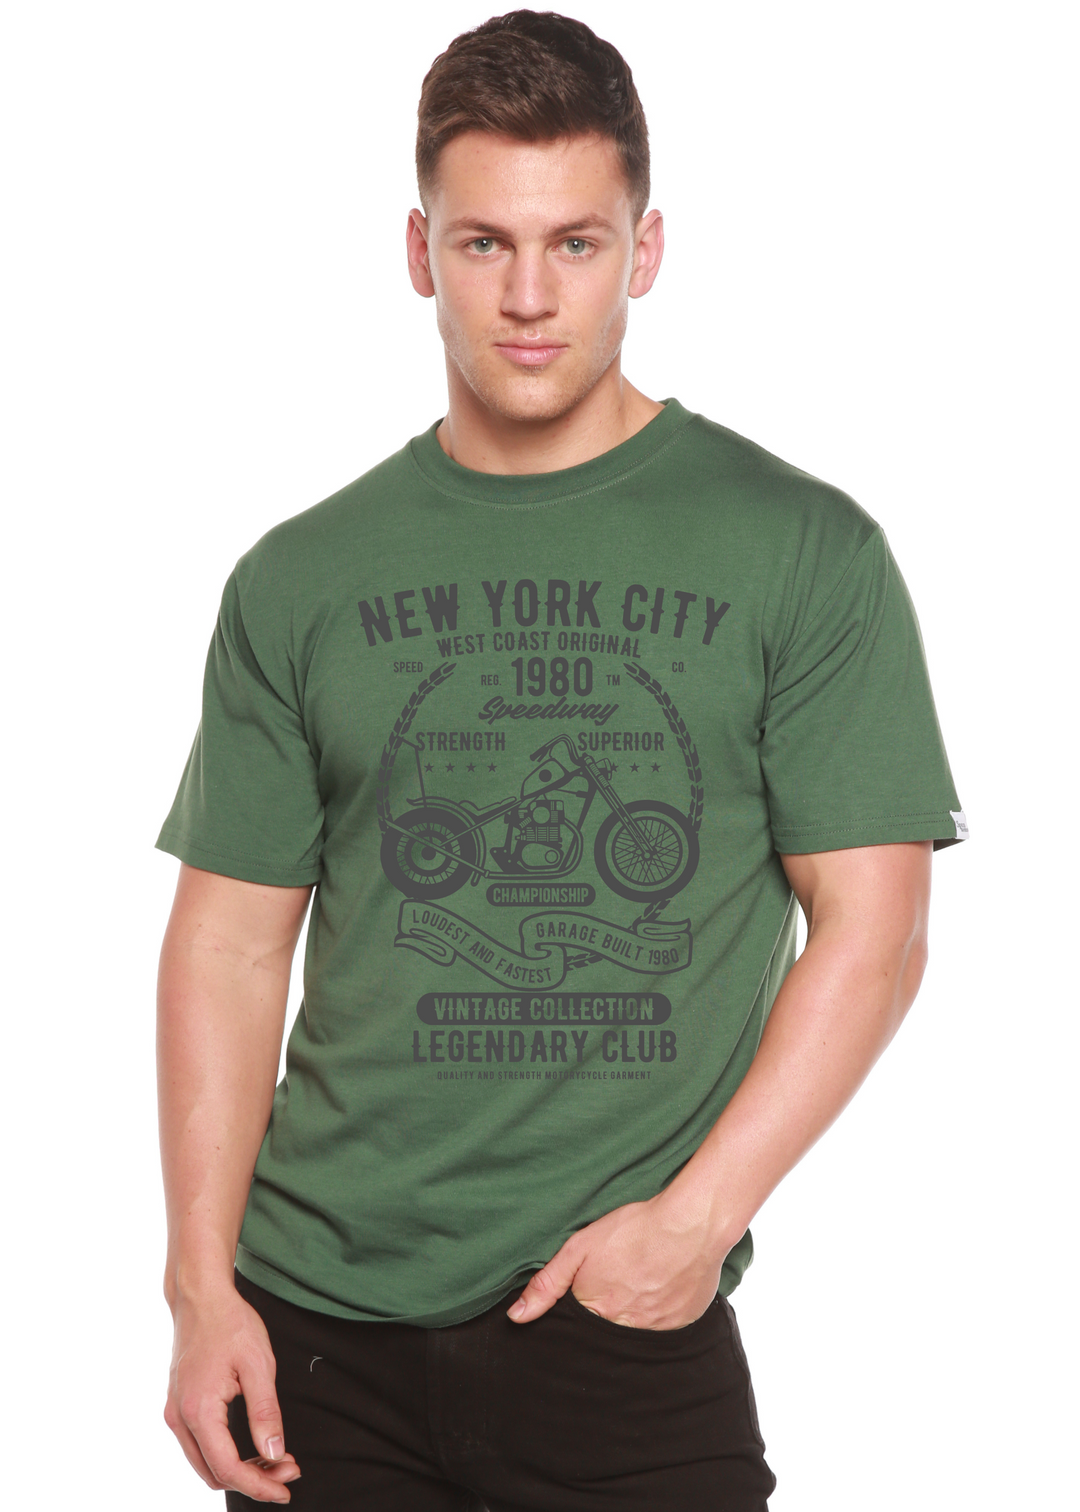 New York City men's bamboo tshirt pine green